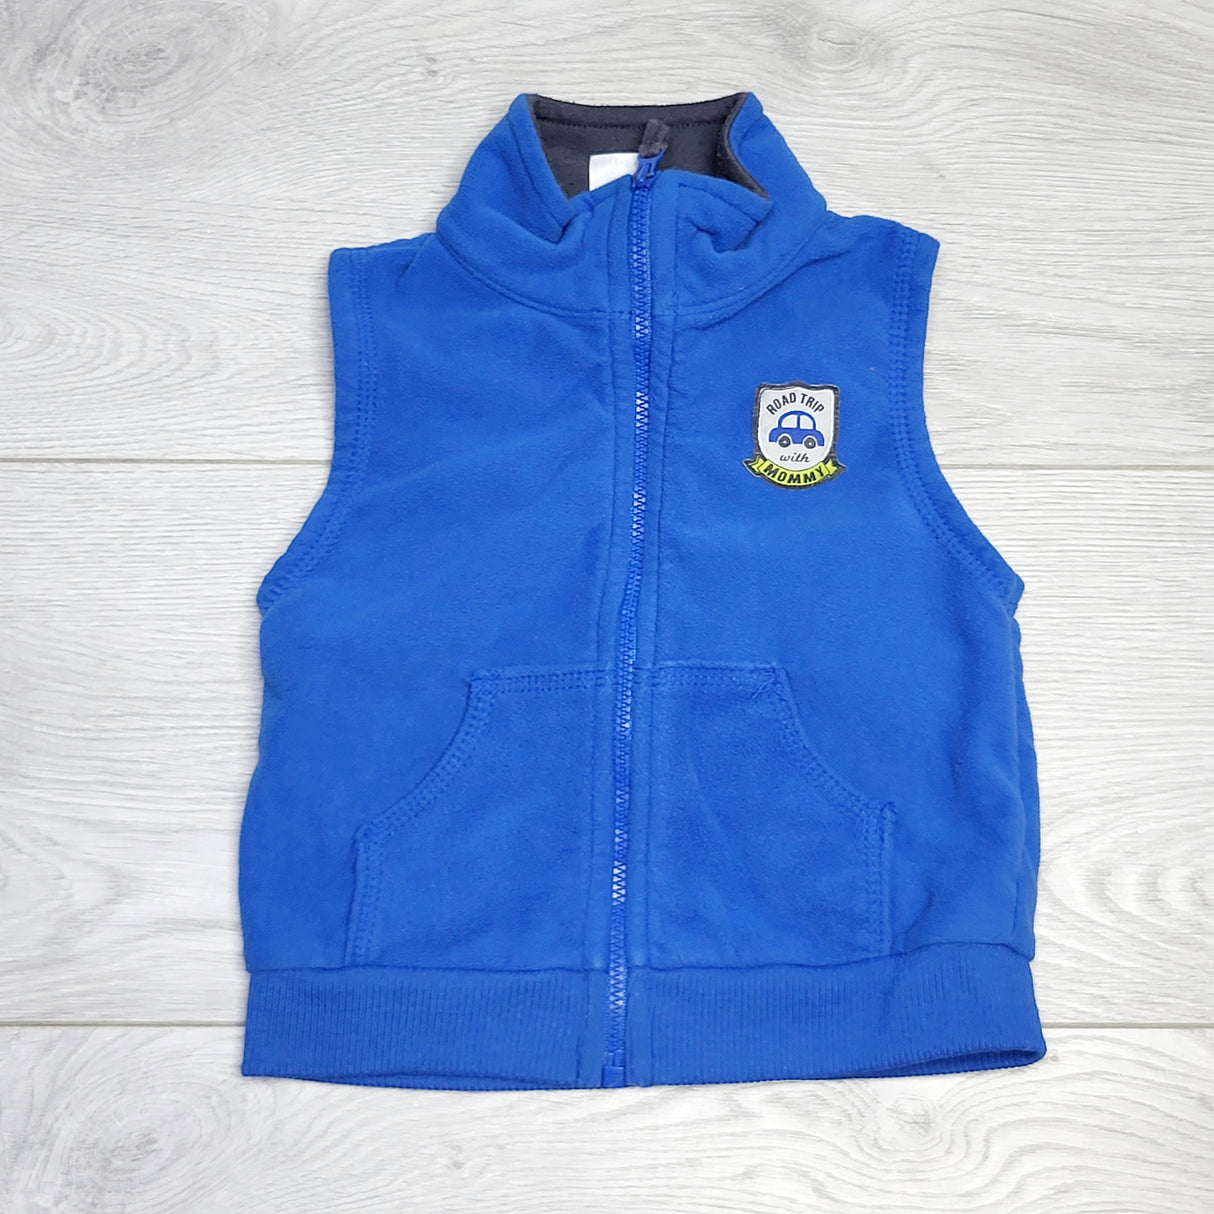 RZA2 - Carters blue fleece vest. Size 18 months